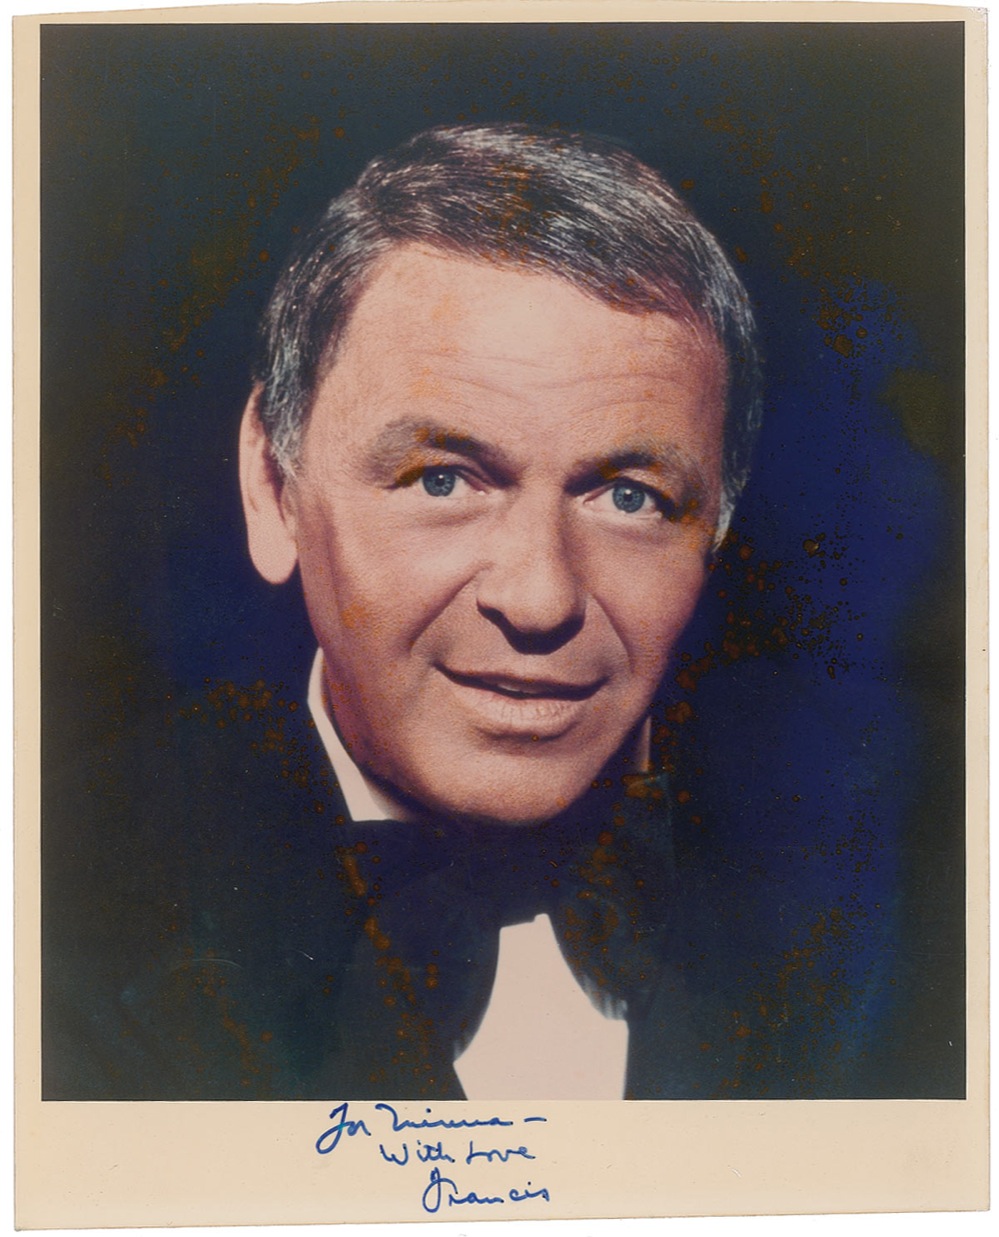 Lot #975 Frank Sinatra